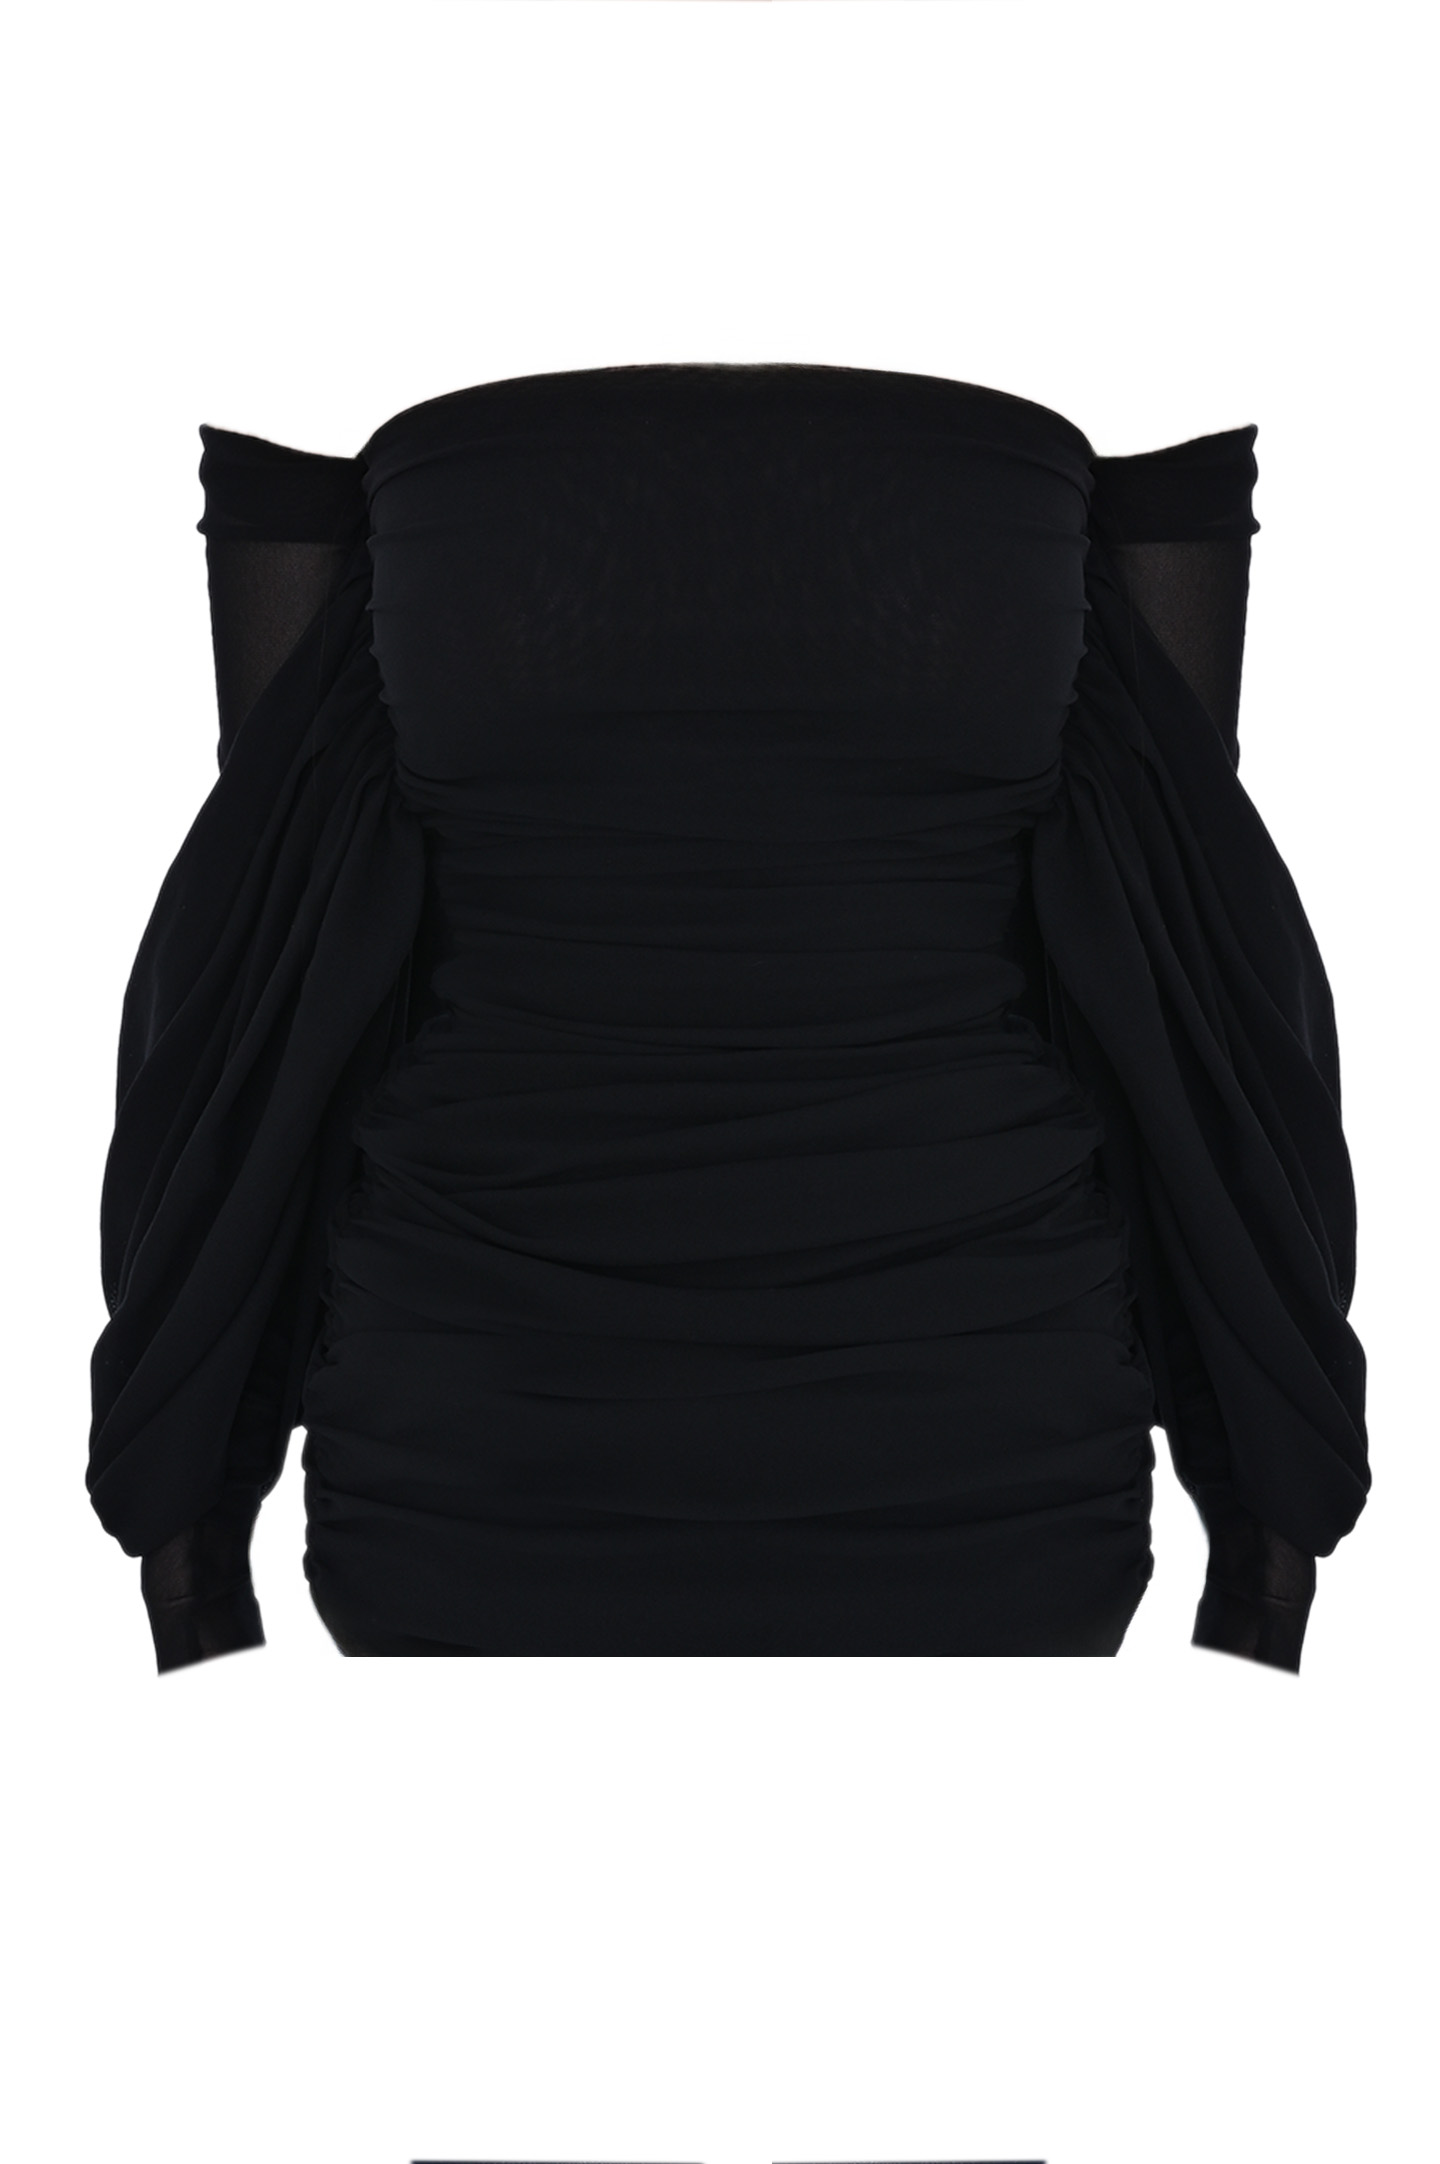 Блуза PHILOSOPHY DI LORENZO SERAFINI A0201 7118, цвет: Черный, Женский